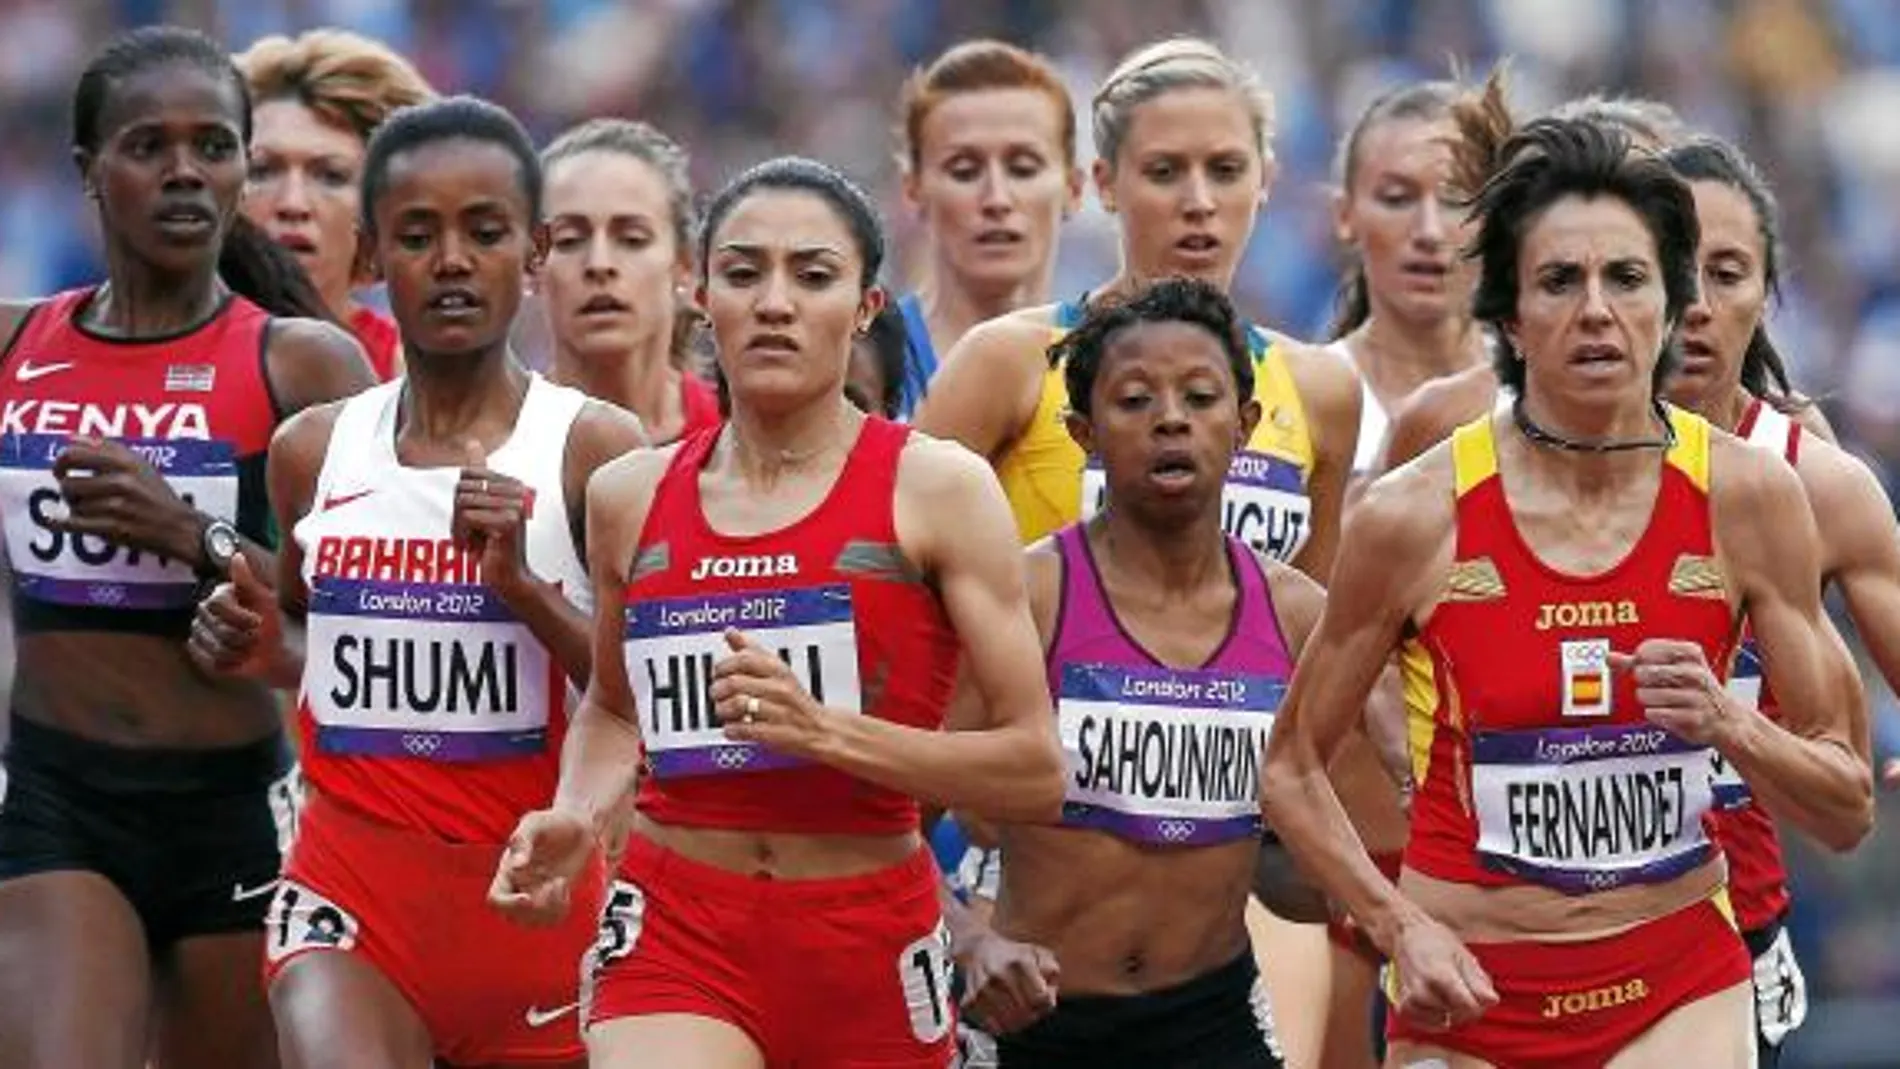 Nuria, a la derecha de la imagen, demostró que tiene experiencia y corrió con mucha cabeza en su serie de 1.500. Terminó cuarta